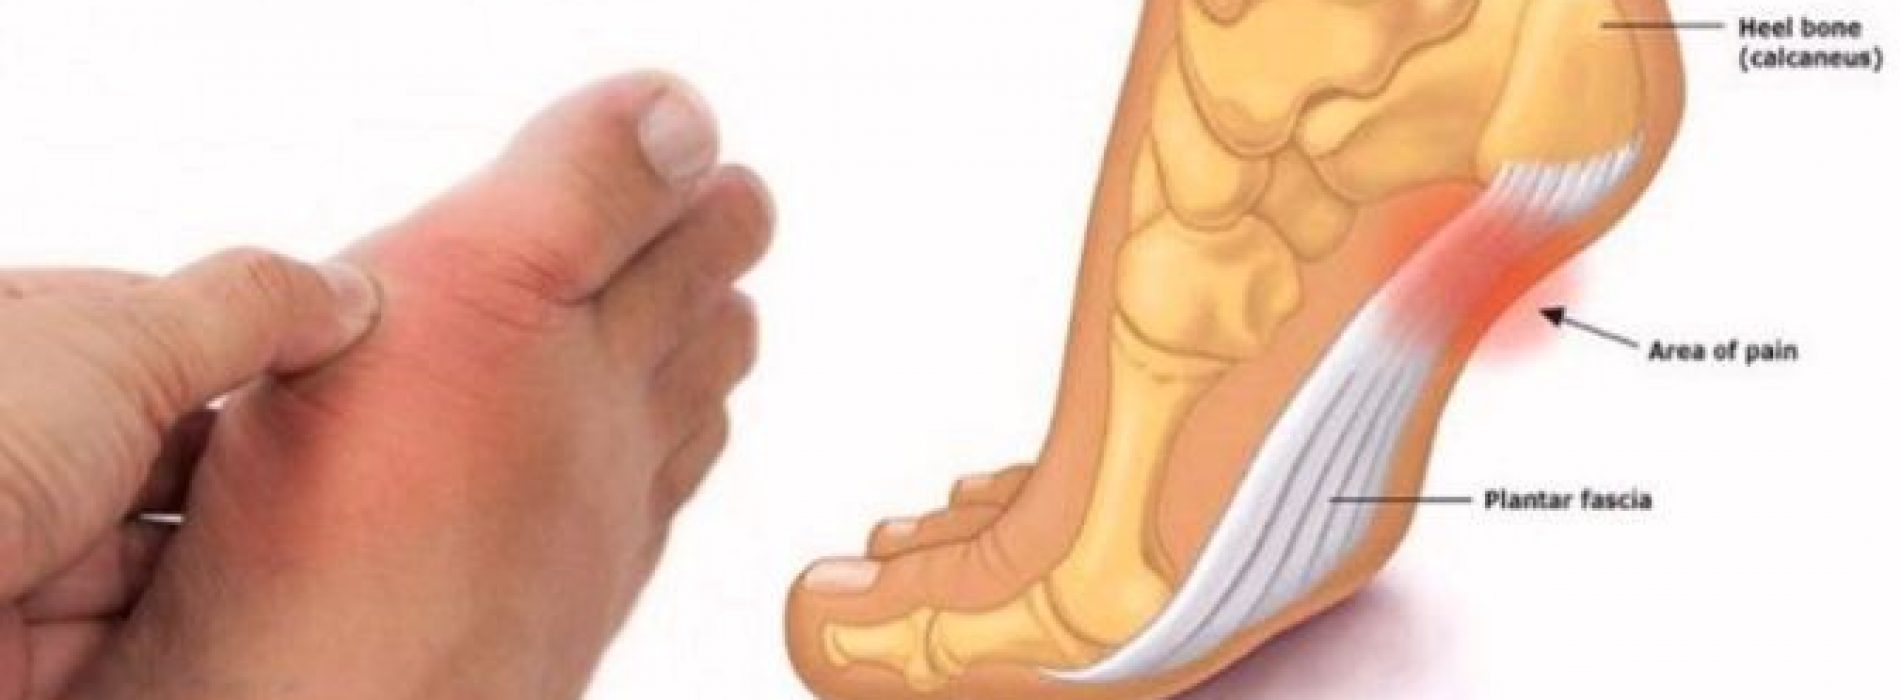 Controleer je voeten en kijk wat ze je vertellen over je bloeddruk, schildklier- en artritis risico